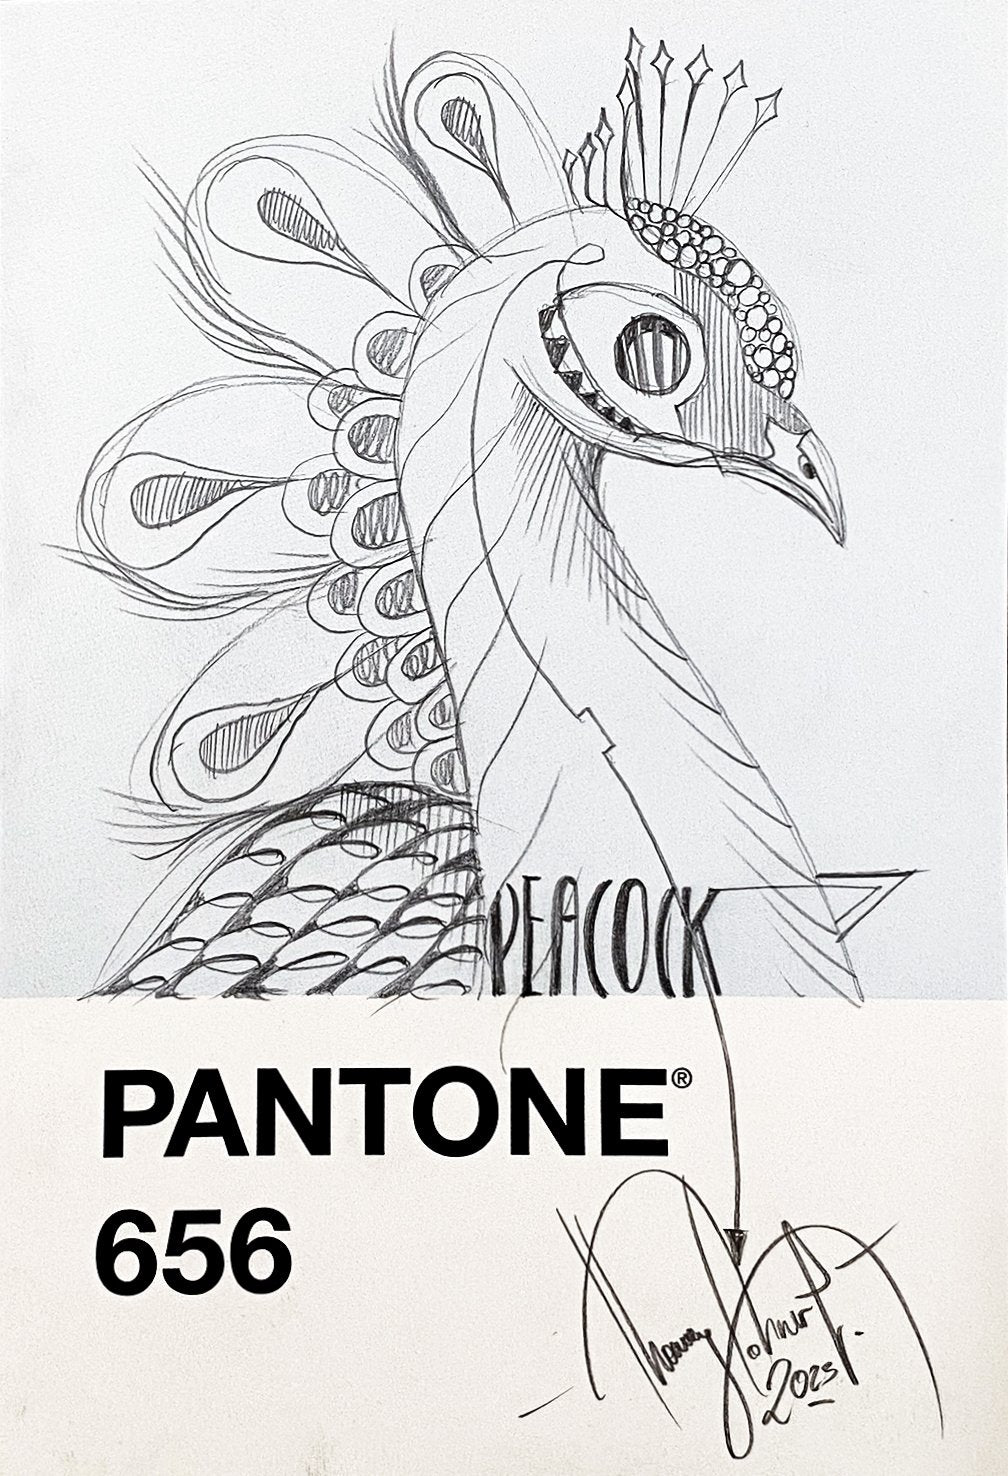 Pantone Peacock